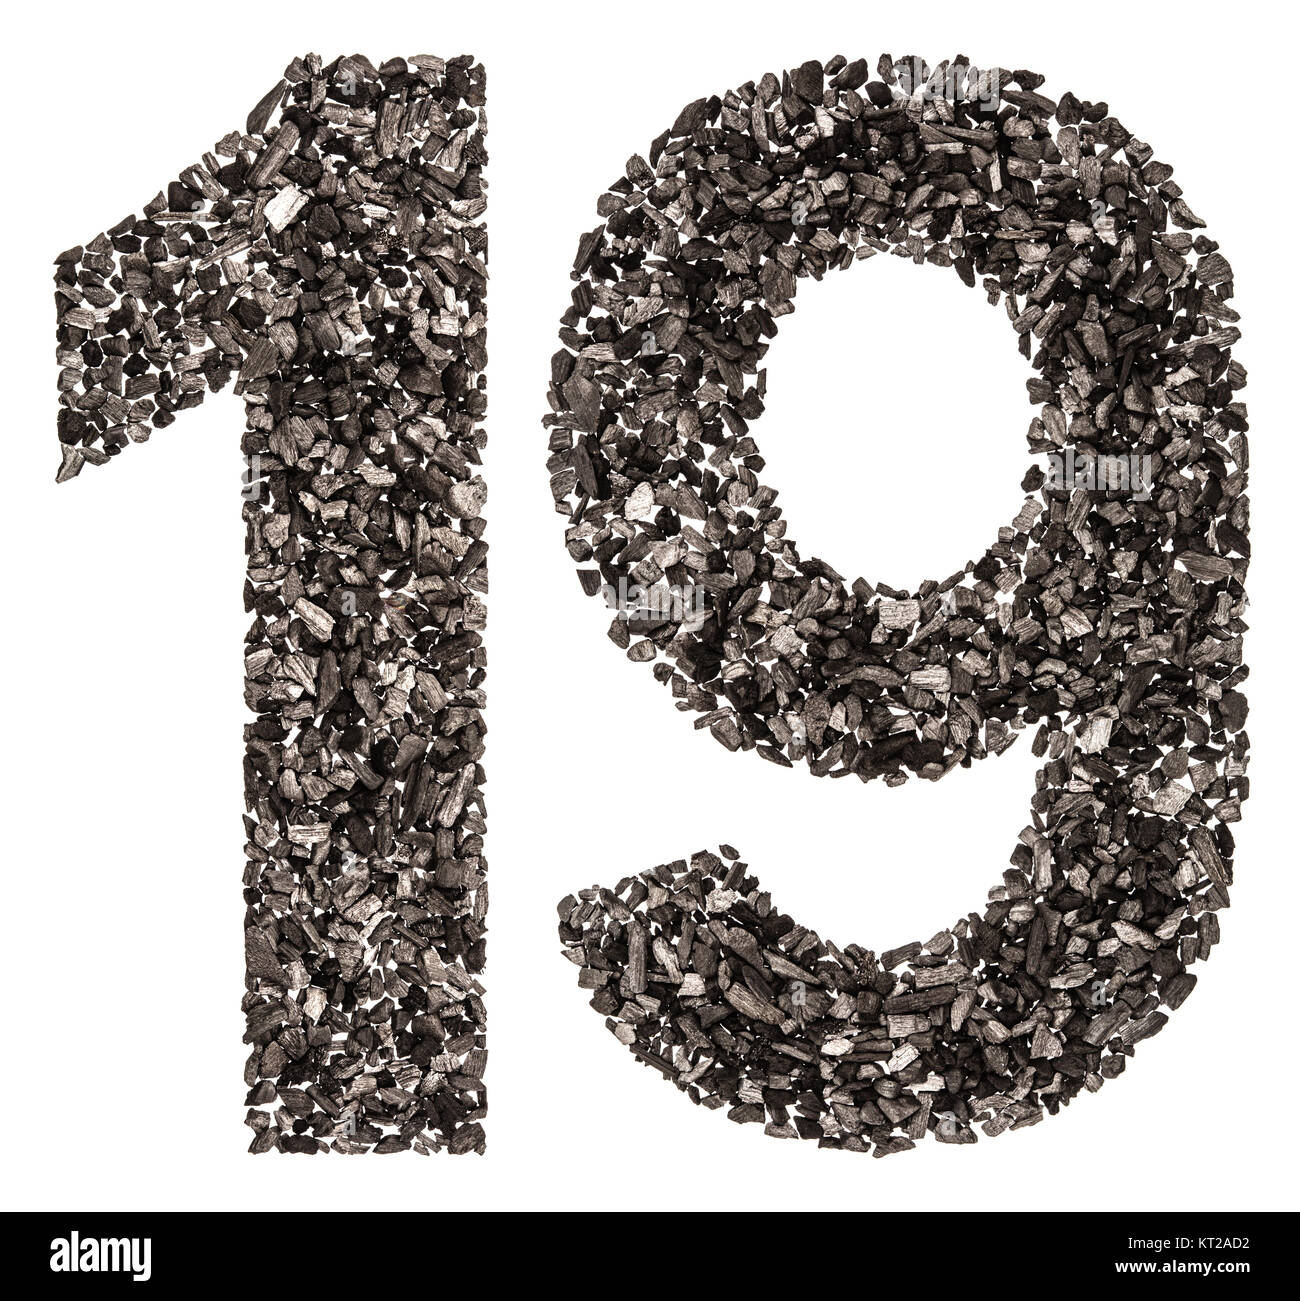 Numero arabo 19, diciannove, dal nero di un carbone naturale, isolato su sfondo bianco Foto Stock